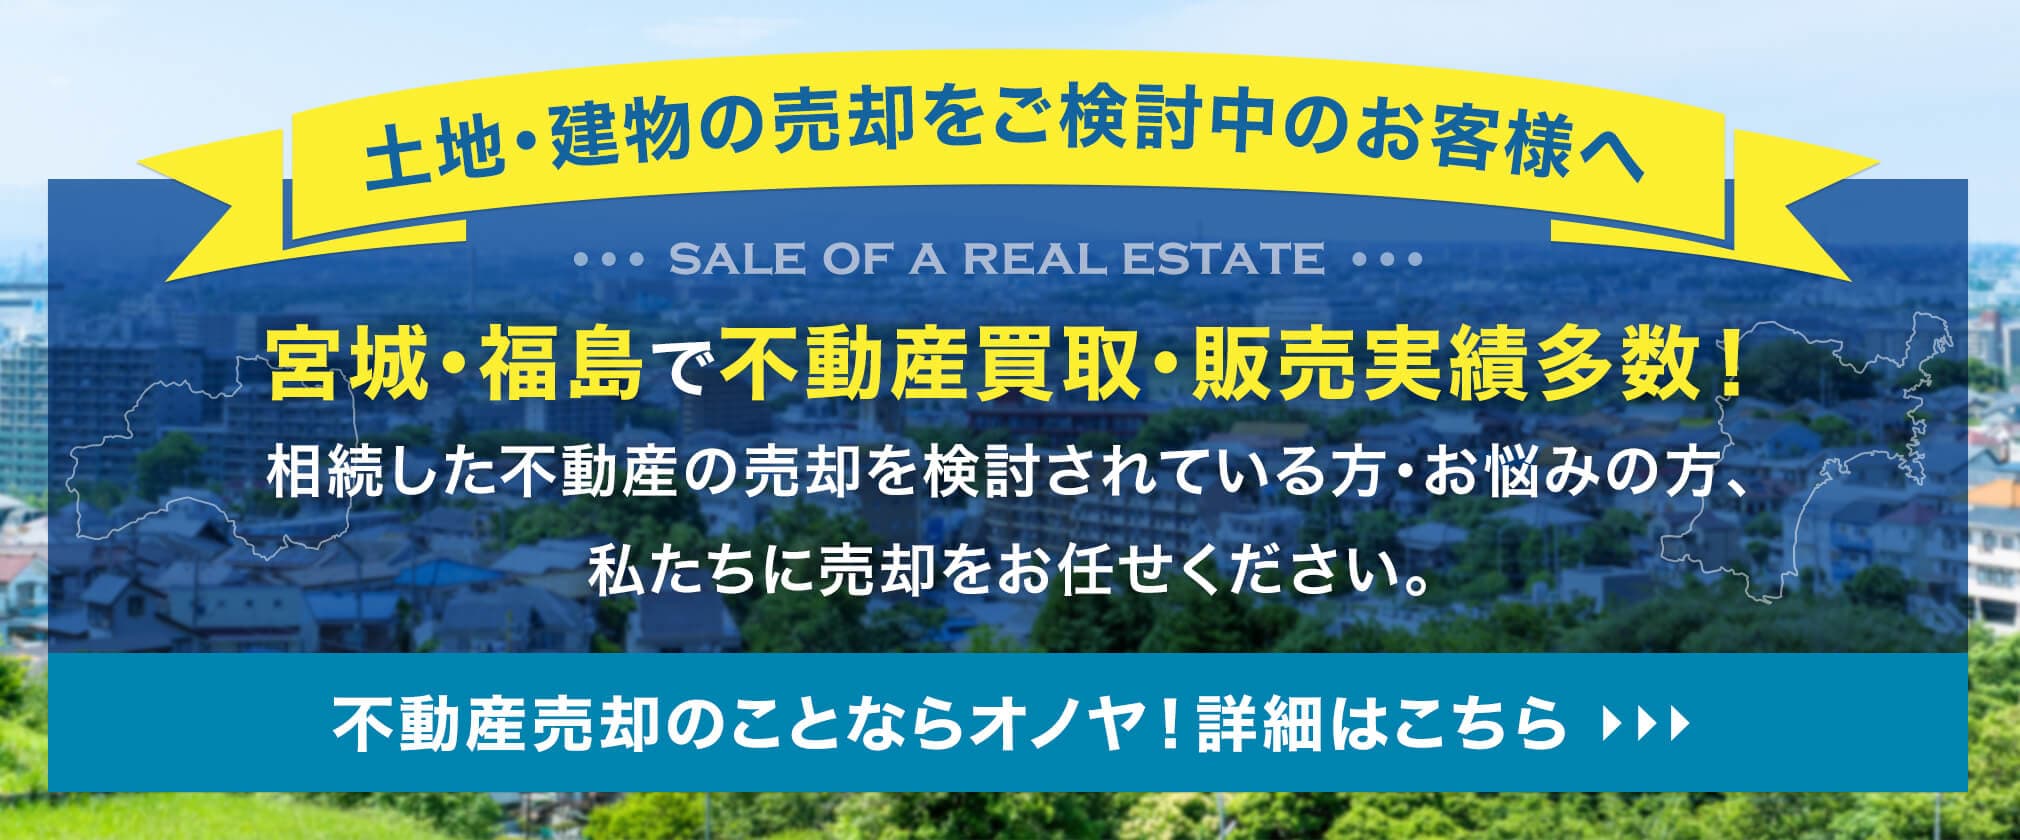 【土地・建物の売却をご検討中のお客様へ】宮城・福島で不動産買取・販売実績多数！相続した不動産の売却を検討されている方・お悩みの方、私たちに売却をお任せください。不動産売却のことなら365リノベにお任せください！詳細はこちら